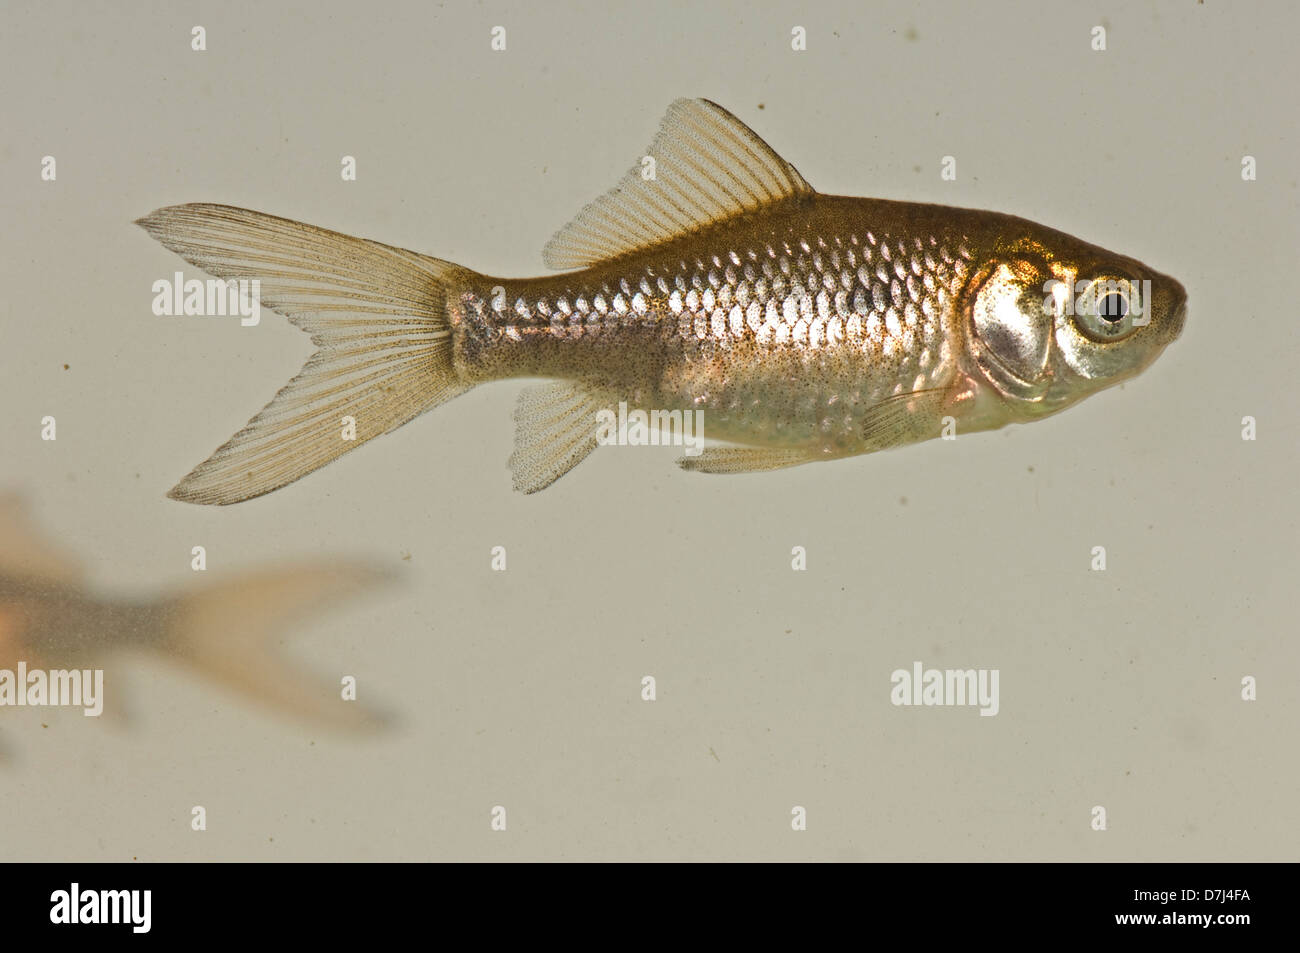 Ein junger Goldfisch, Carassius Auratus Auratus, braun & silber Farbe aber fehlt das Gold oder Orange geschlechtsreifer Fische Stockfoto